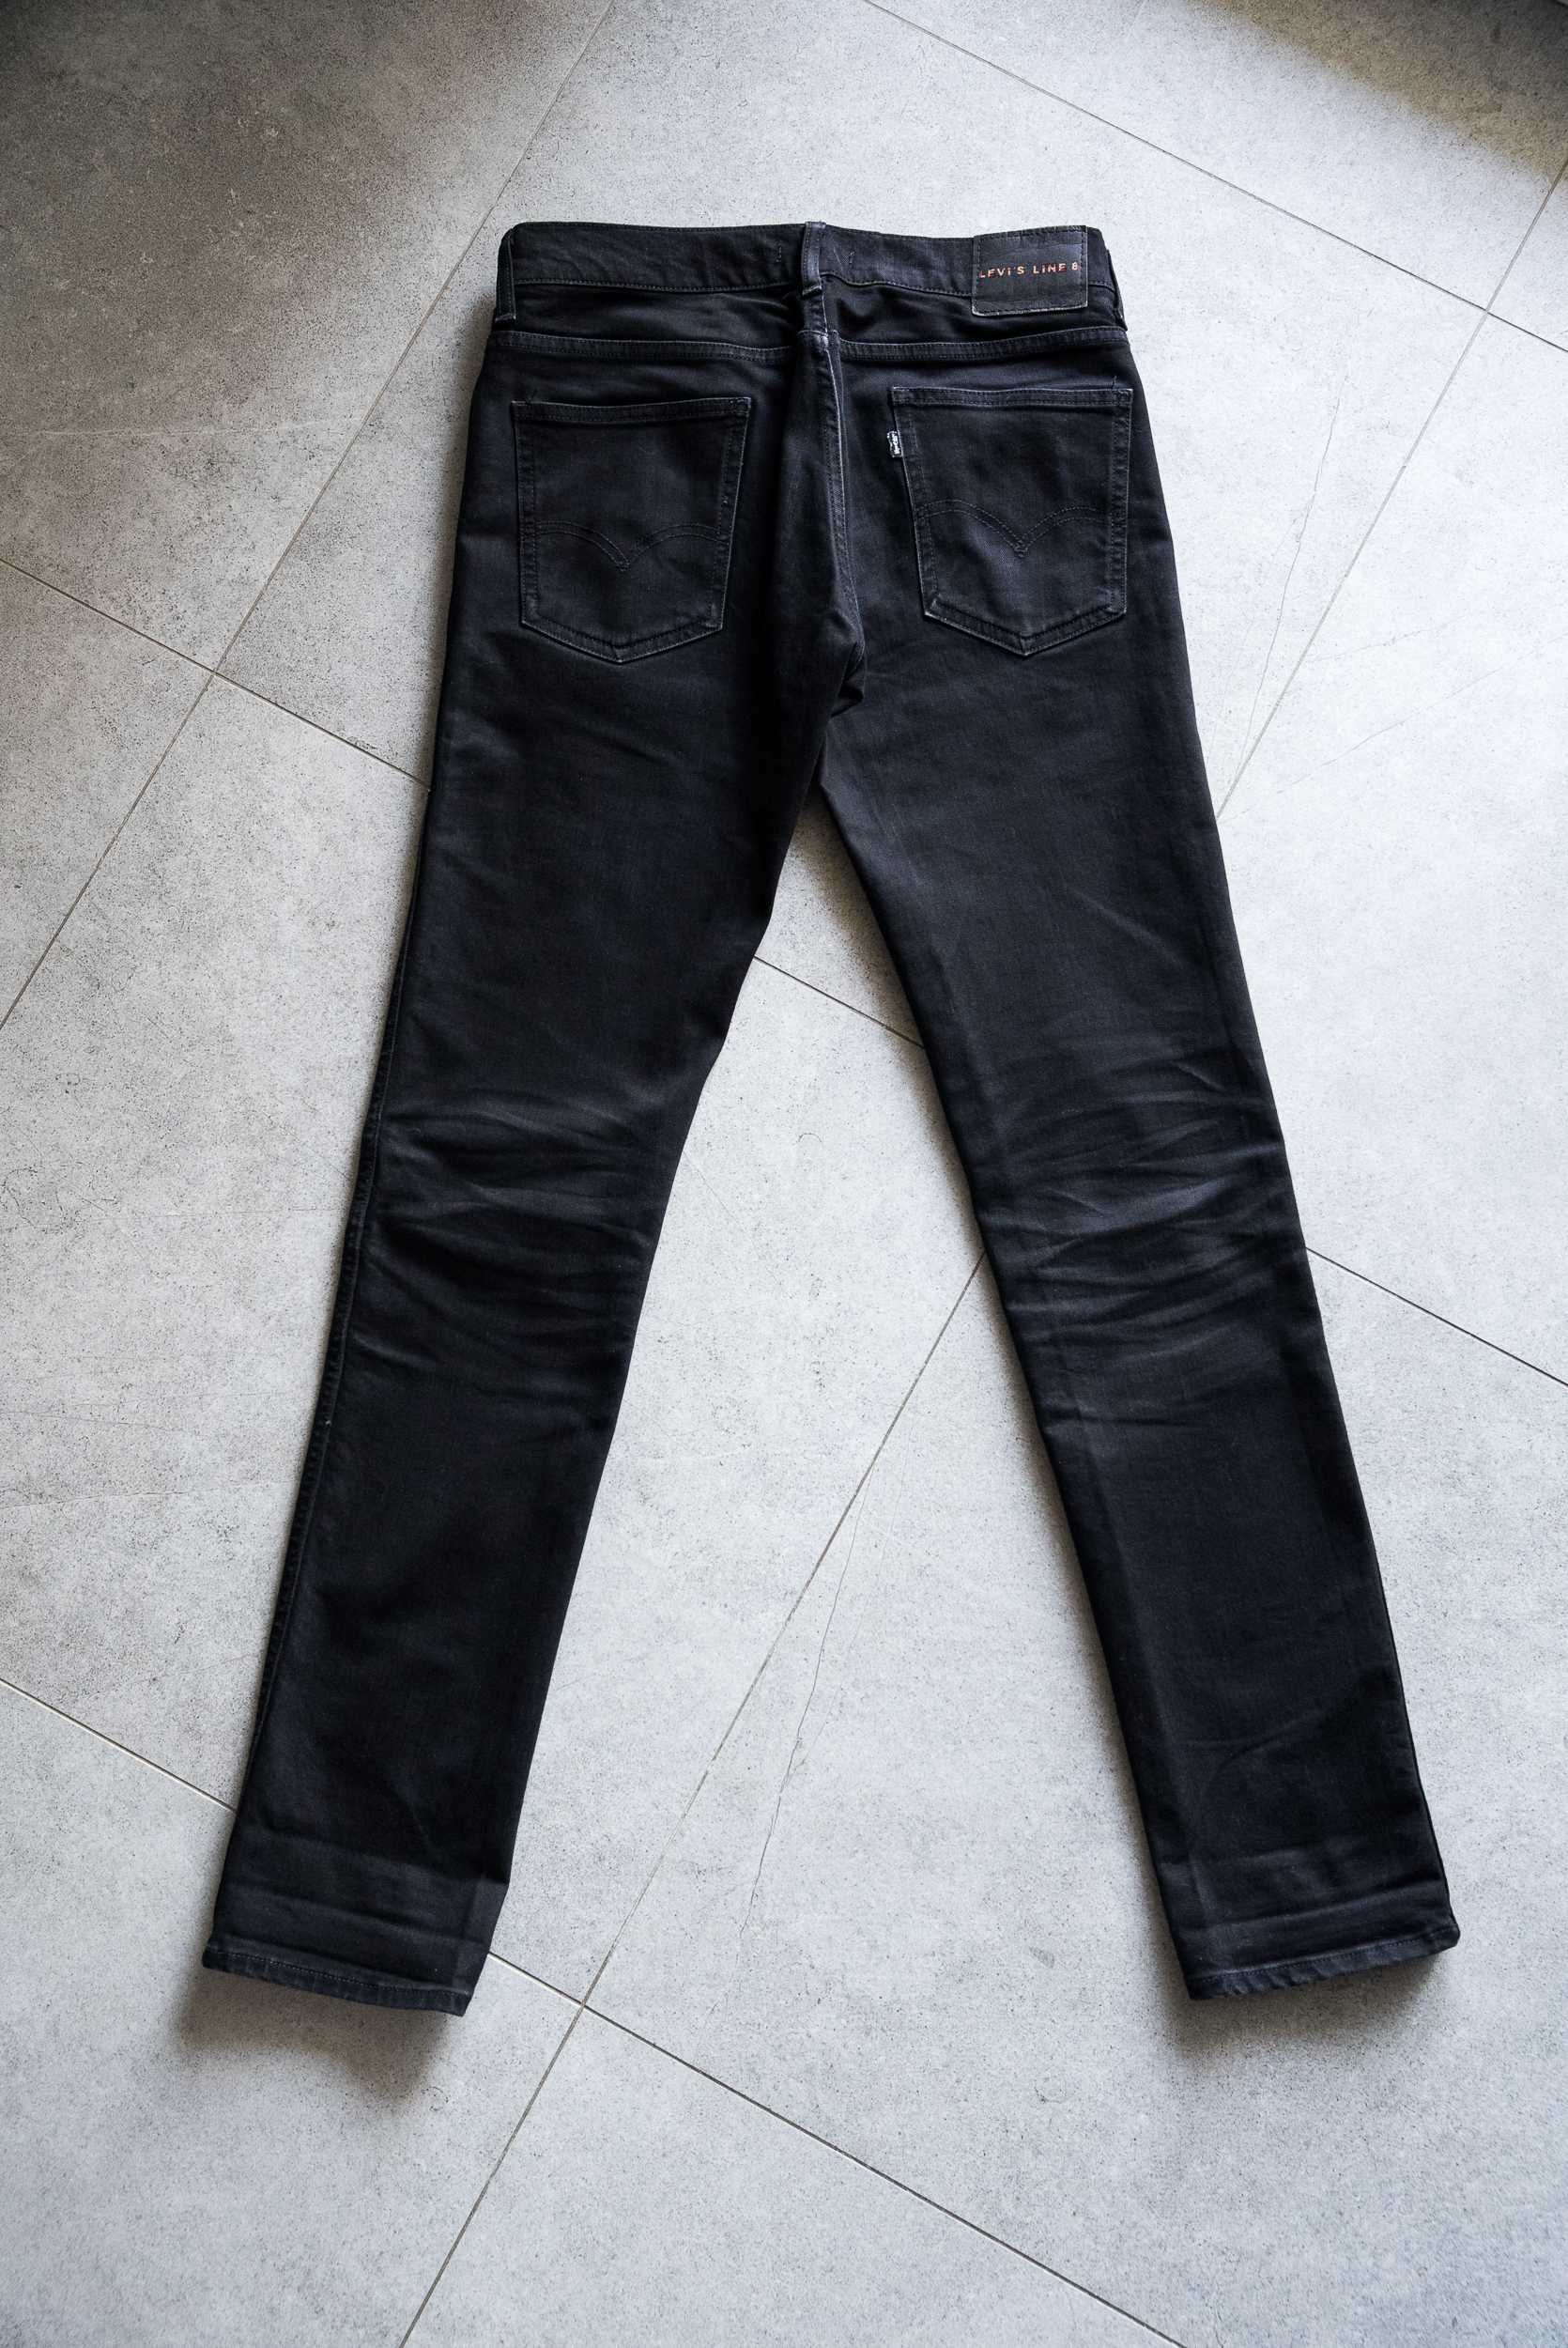 Czarne jeansy Levi's Line 8 - rozmiar 30/34